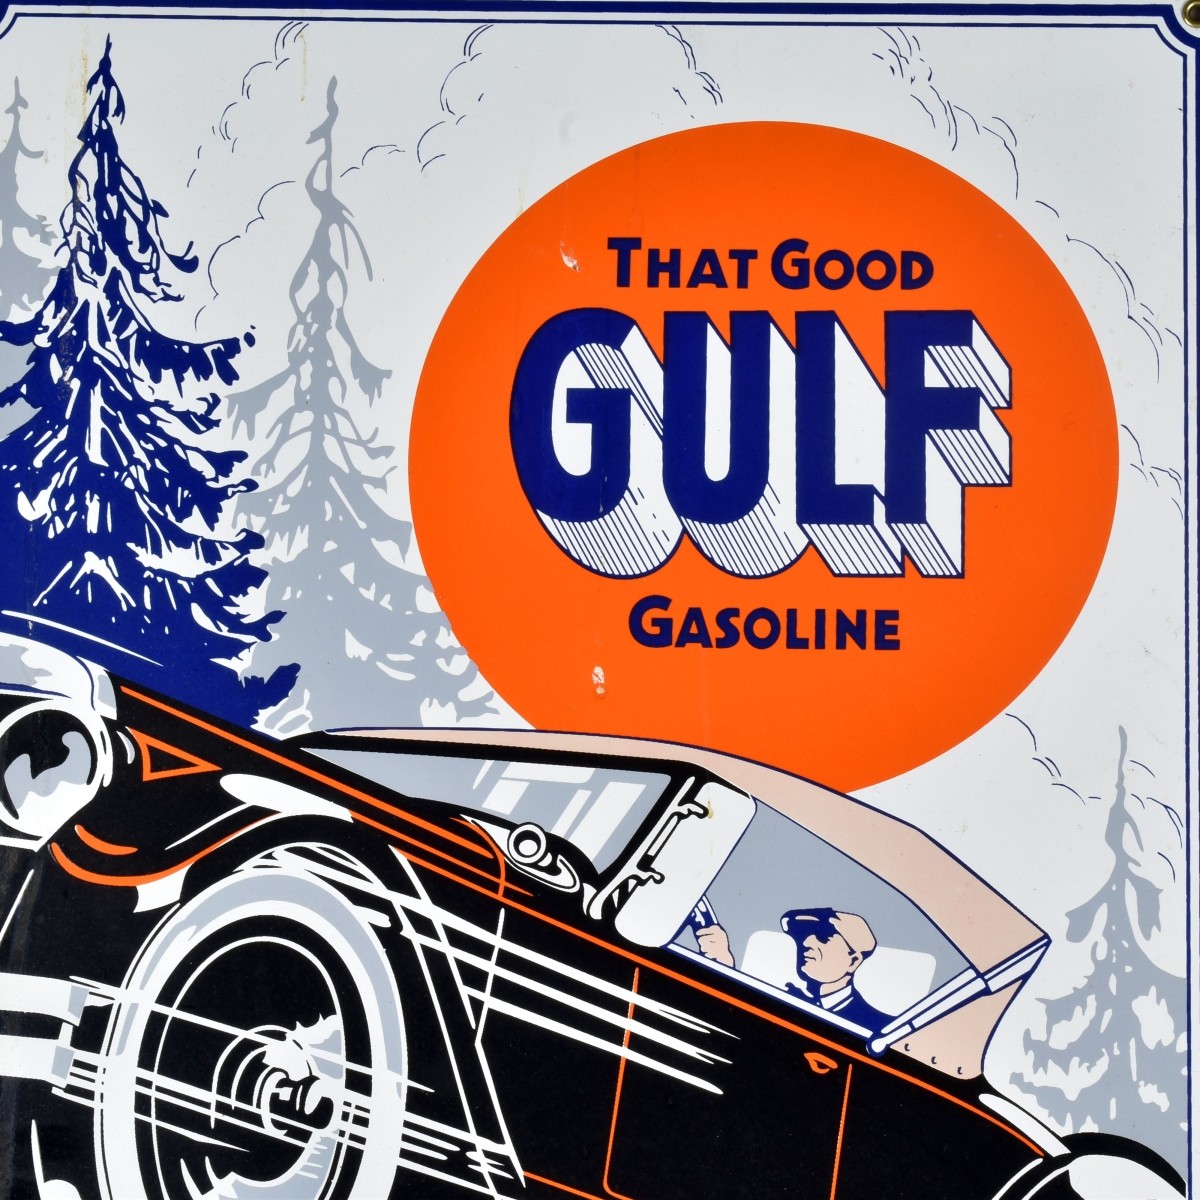 Large Gulf Gas Tin Advertising Sign